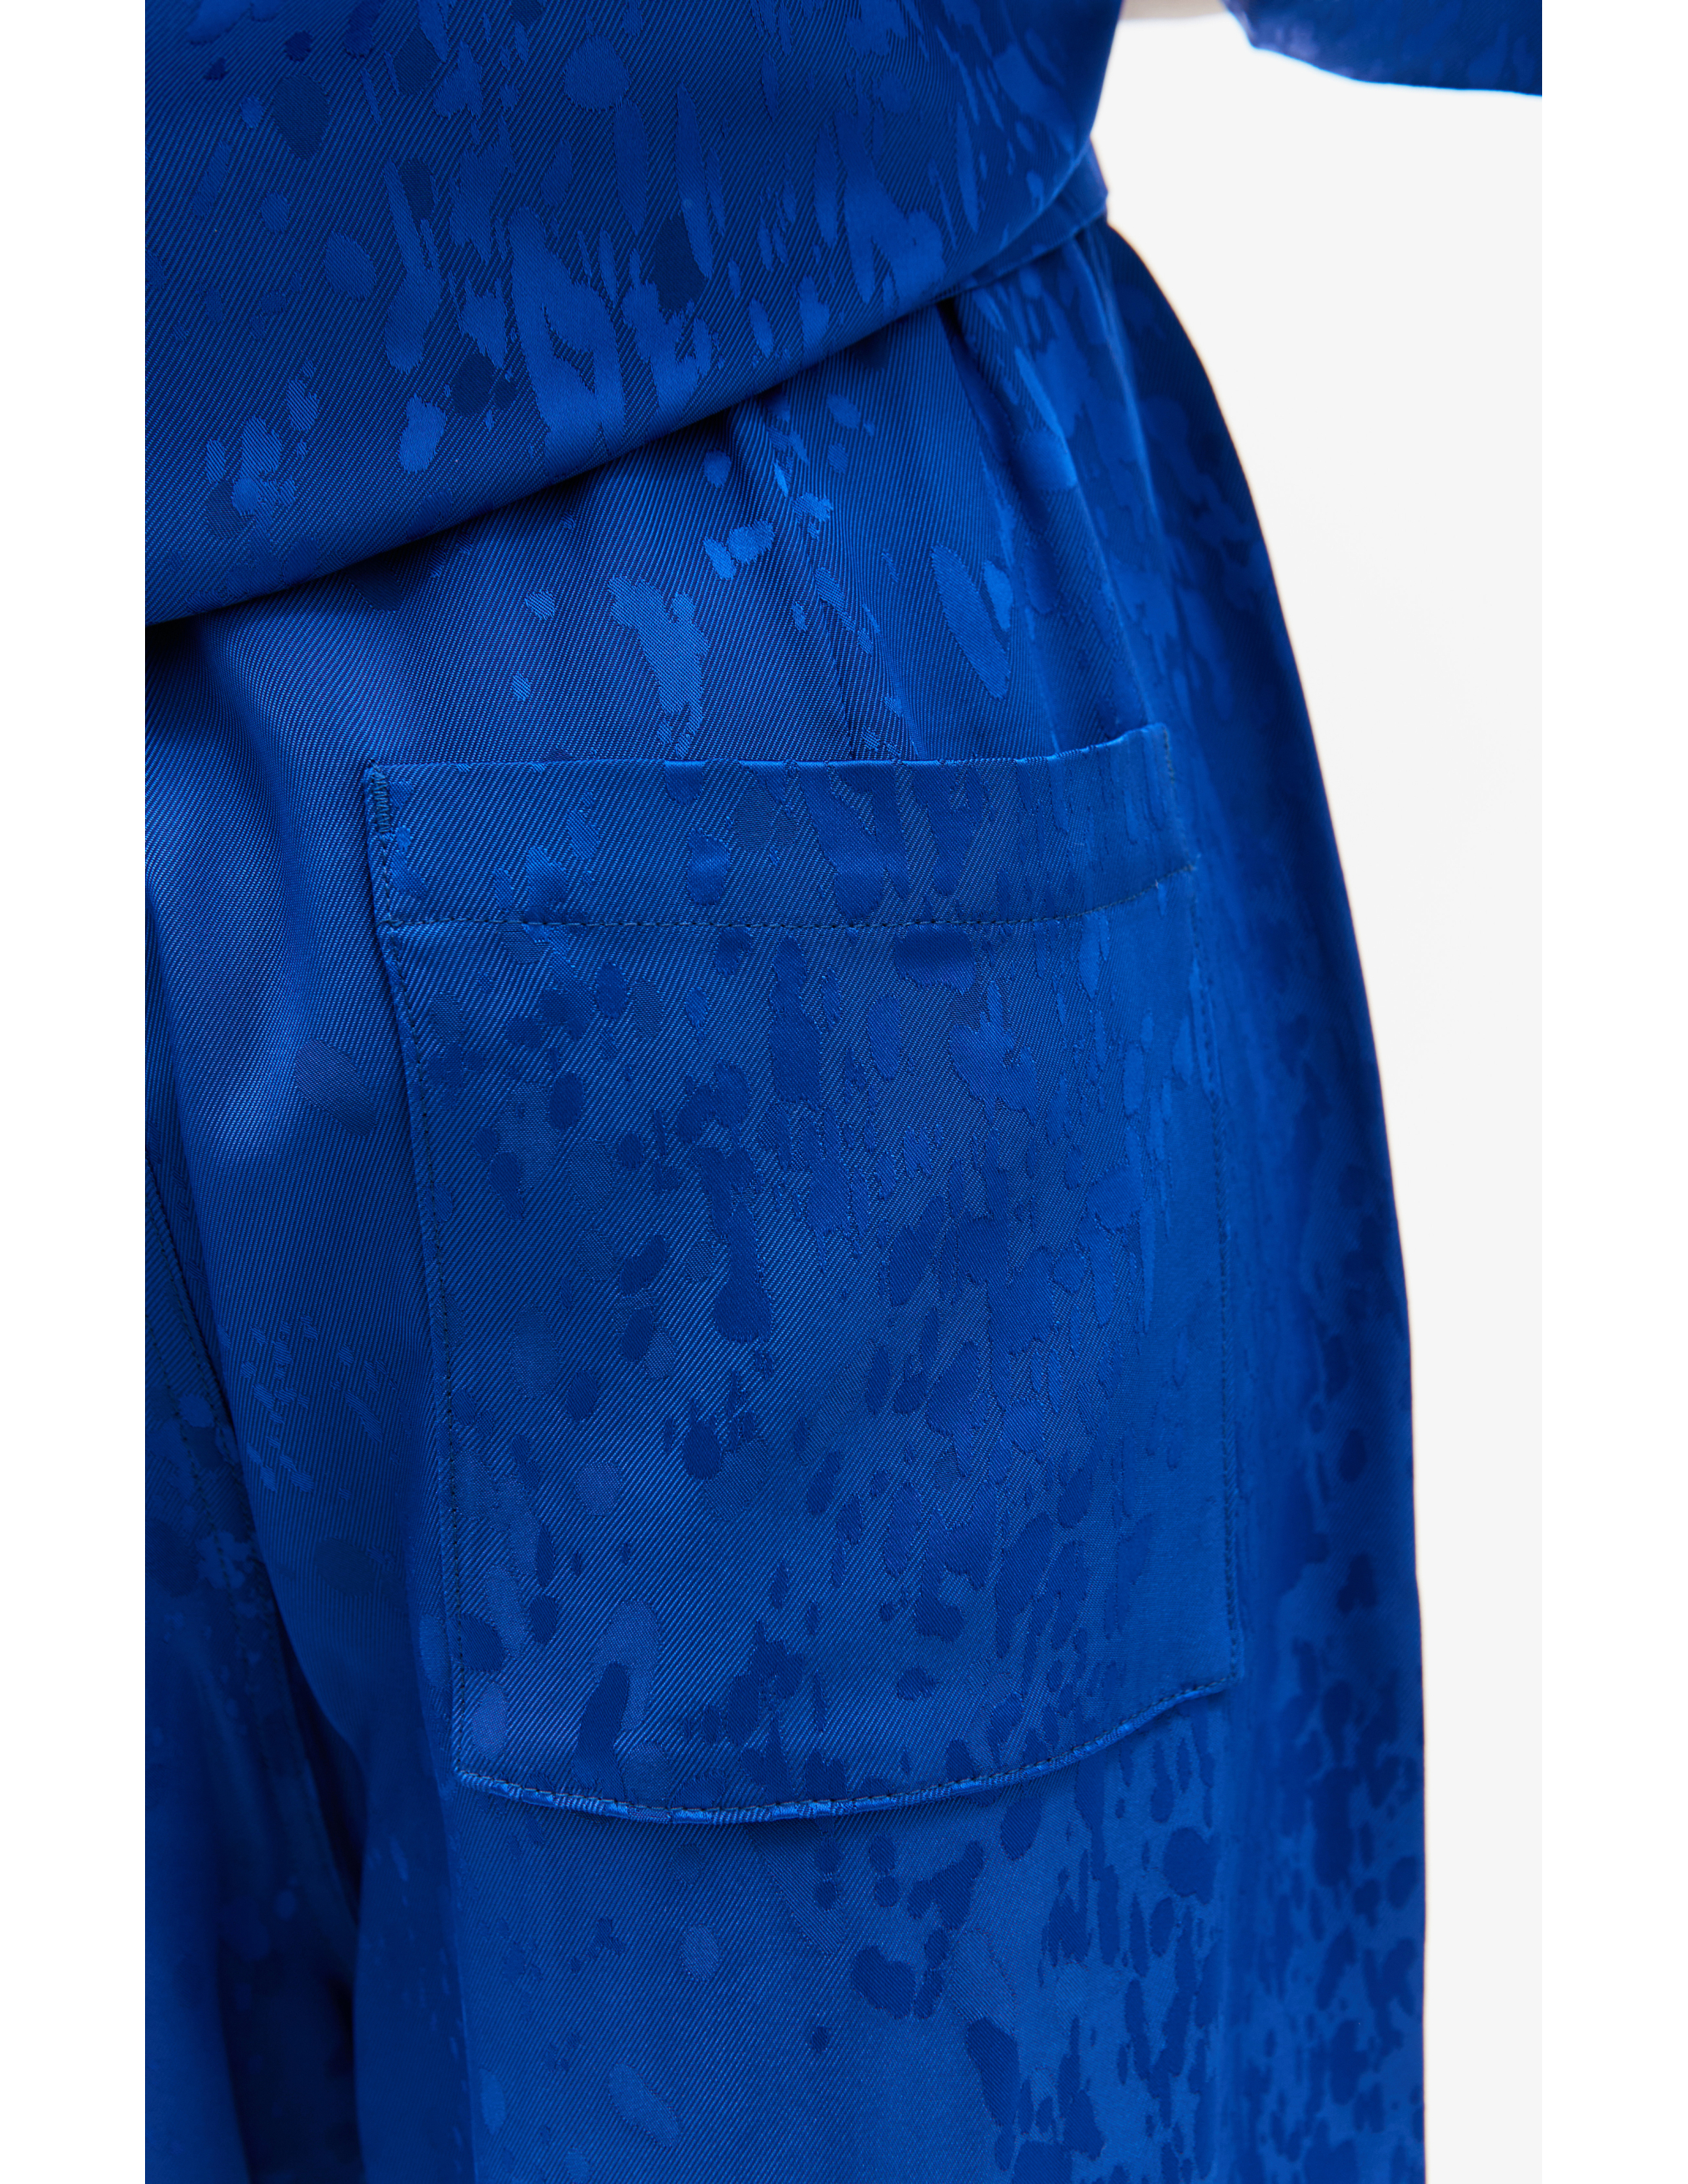 Прямые брюки на резинке LOUIS GABRIEL NOUCHI 0713/T714/029, размер M;L;XL 0713/T714/029 - фото 5